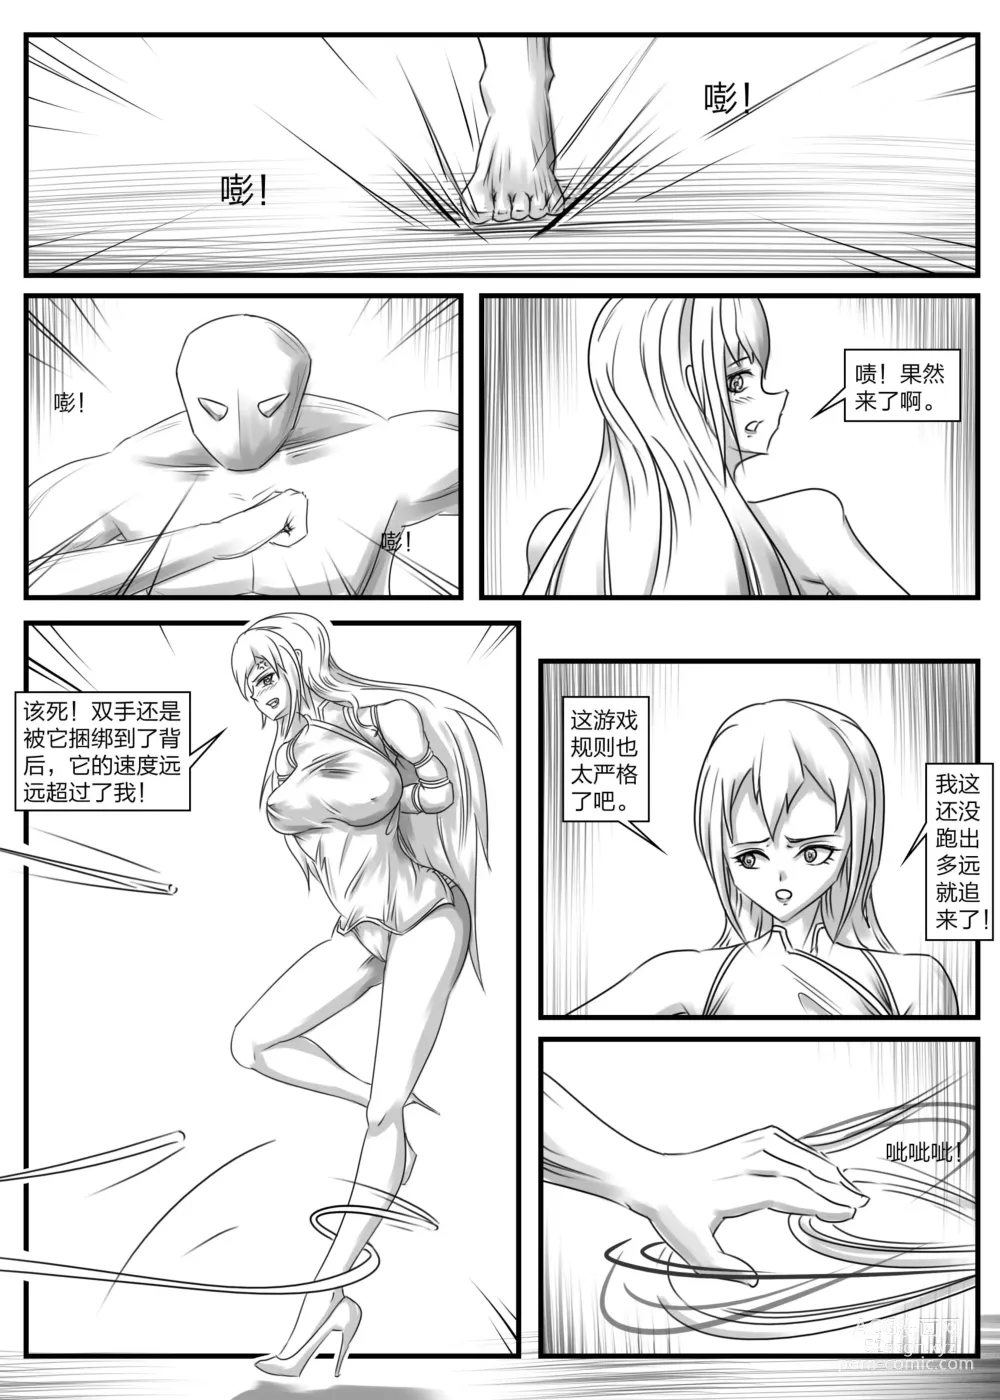 Page 4 of doujinshi 《被困游戏世界2》